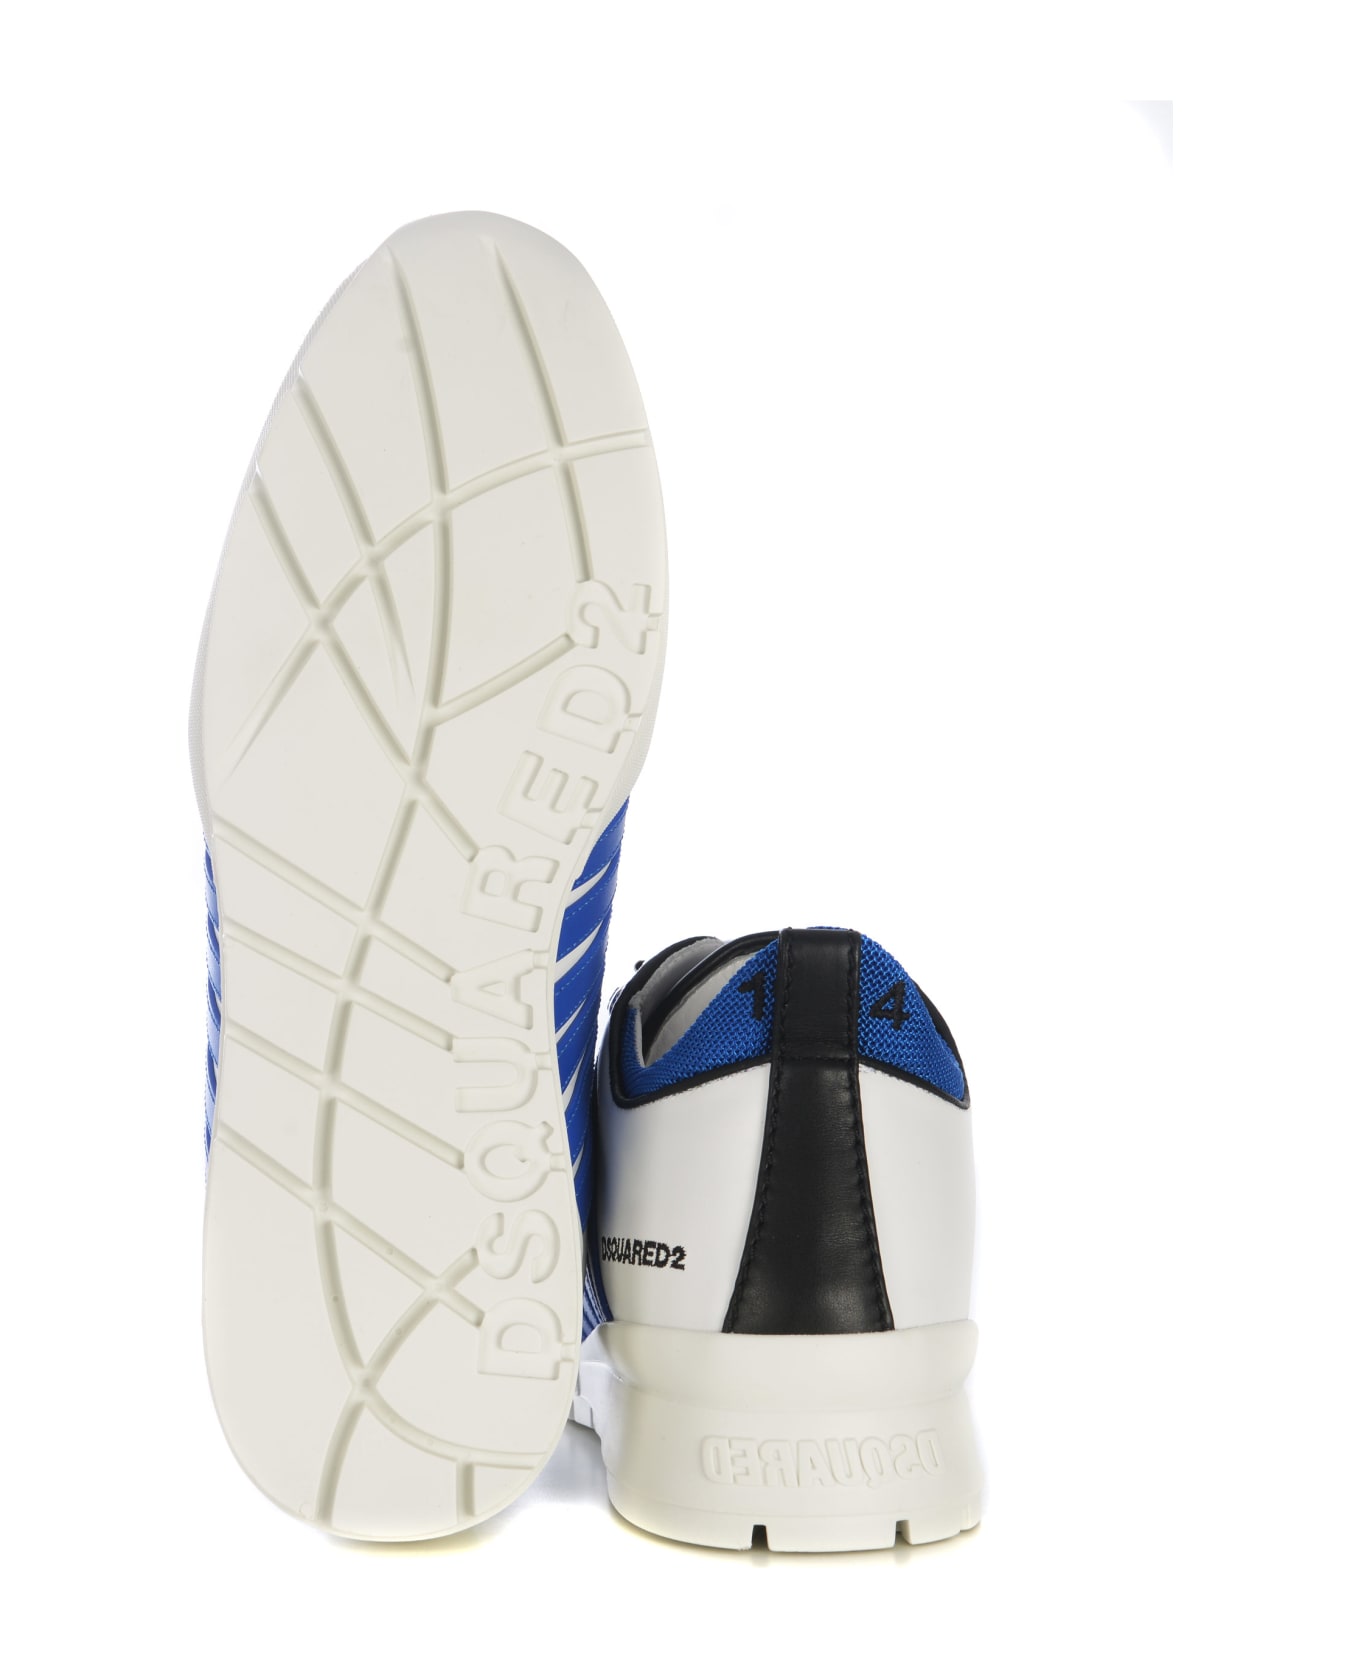 Dsquared2 Legendary Striped Almond Toe Sneakers - Bianco/azzurro